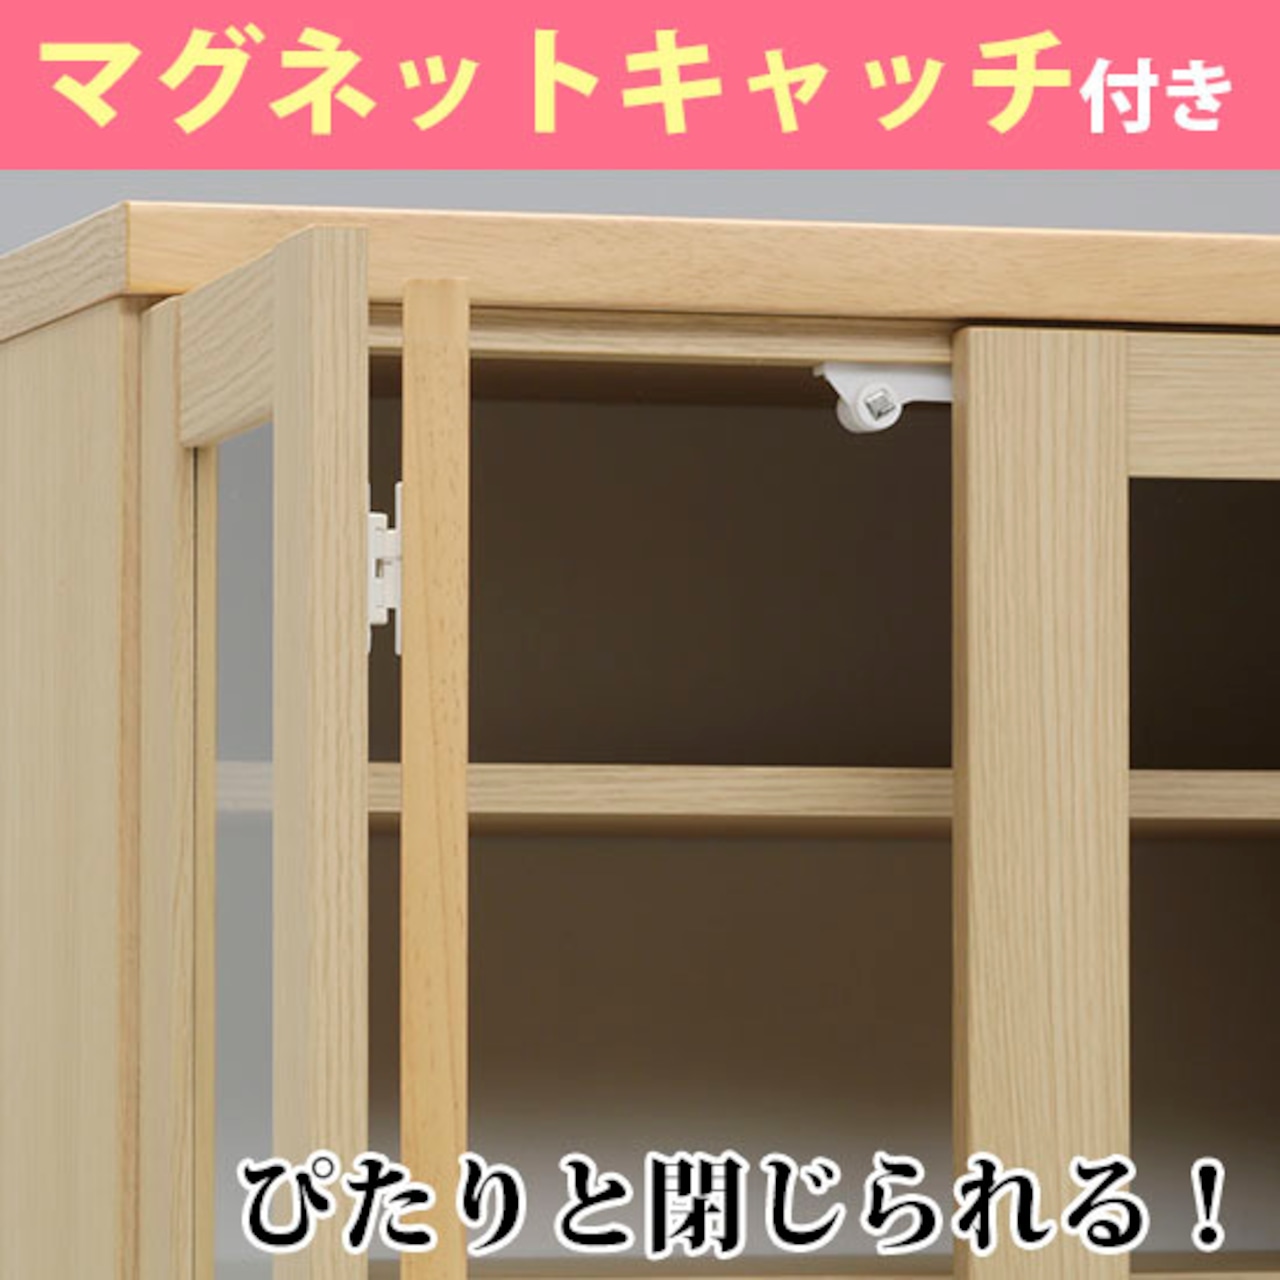 【幅90】キッチンボード ダイニングボード 食器棚 収納 木目調 (全3色)